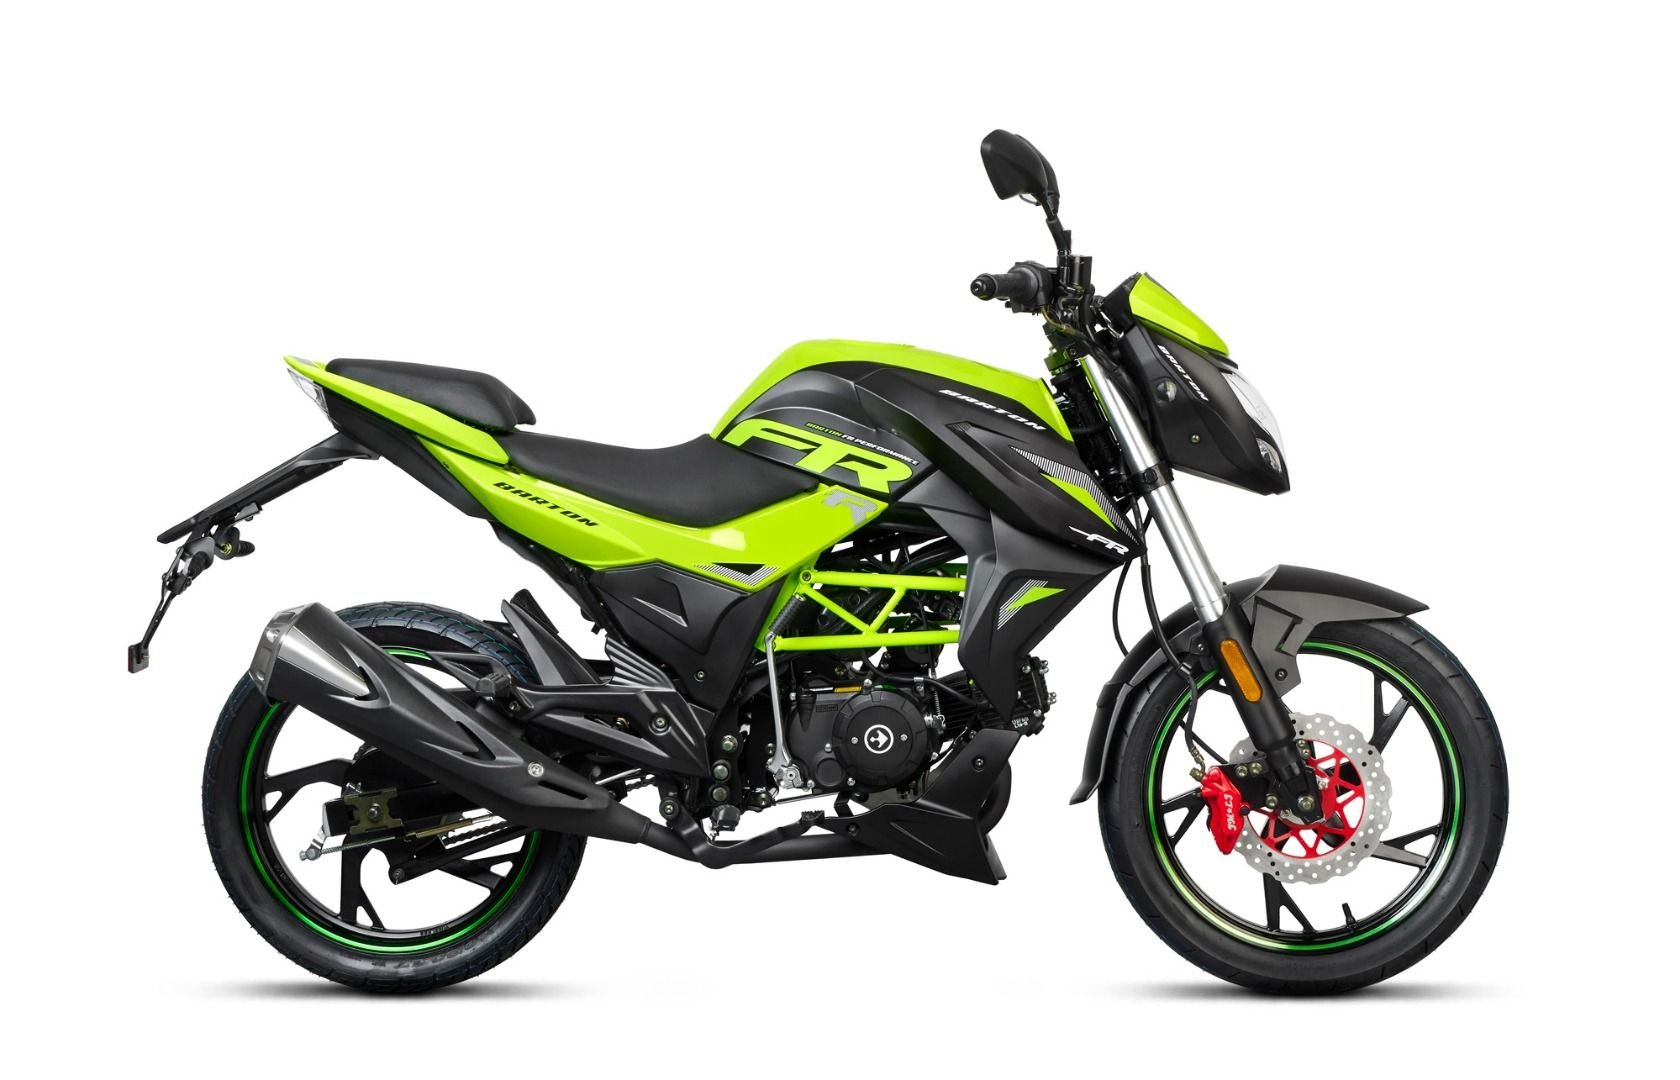 Motociclu barton fr50cc, culoare negru/verde